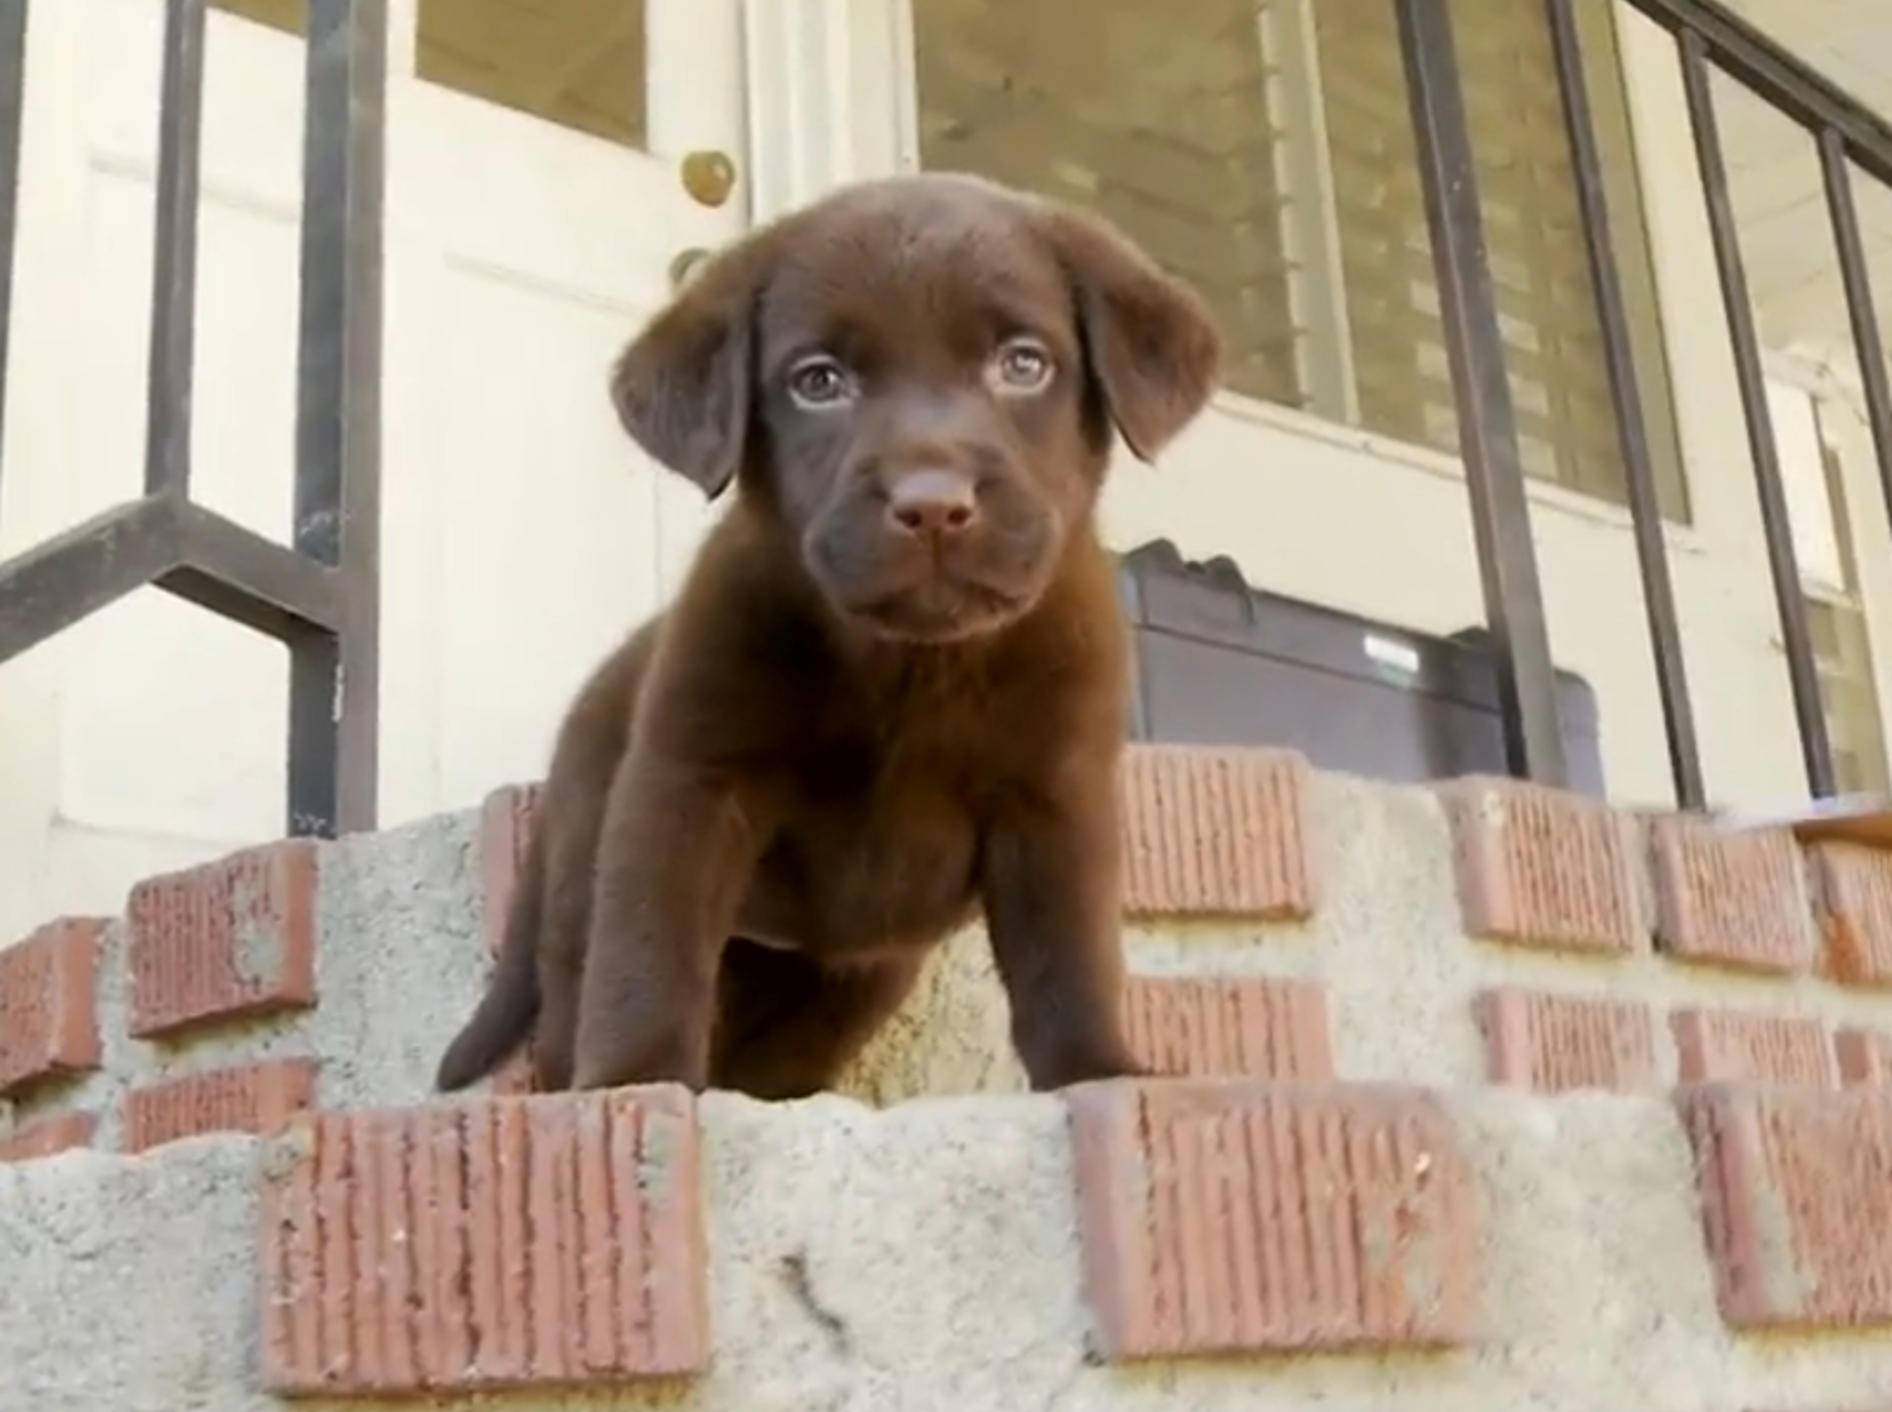 Labrador-Welpe: "Wie komme ich die Treppe hinunter?" – Bild: YouTube / The Pet Collective